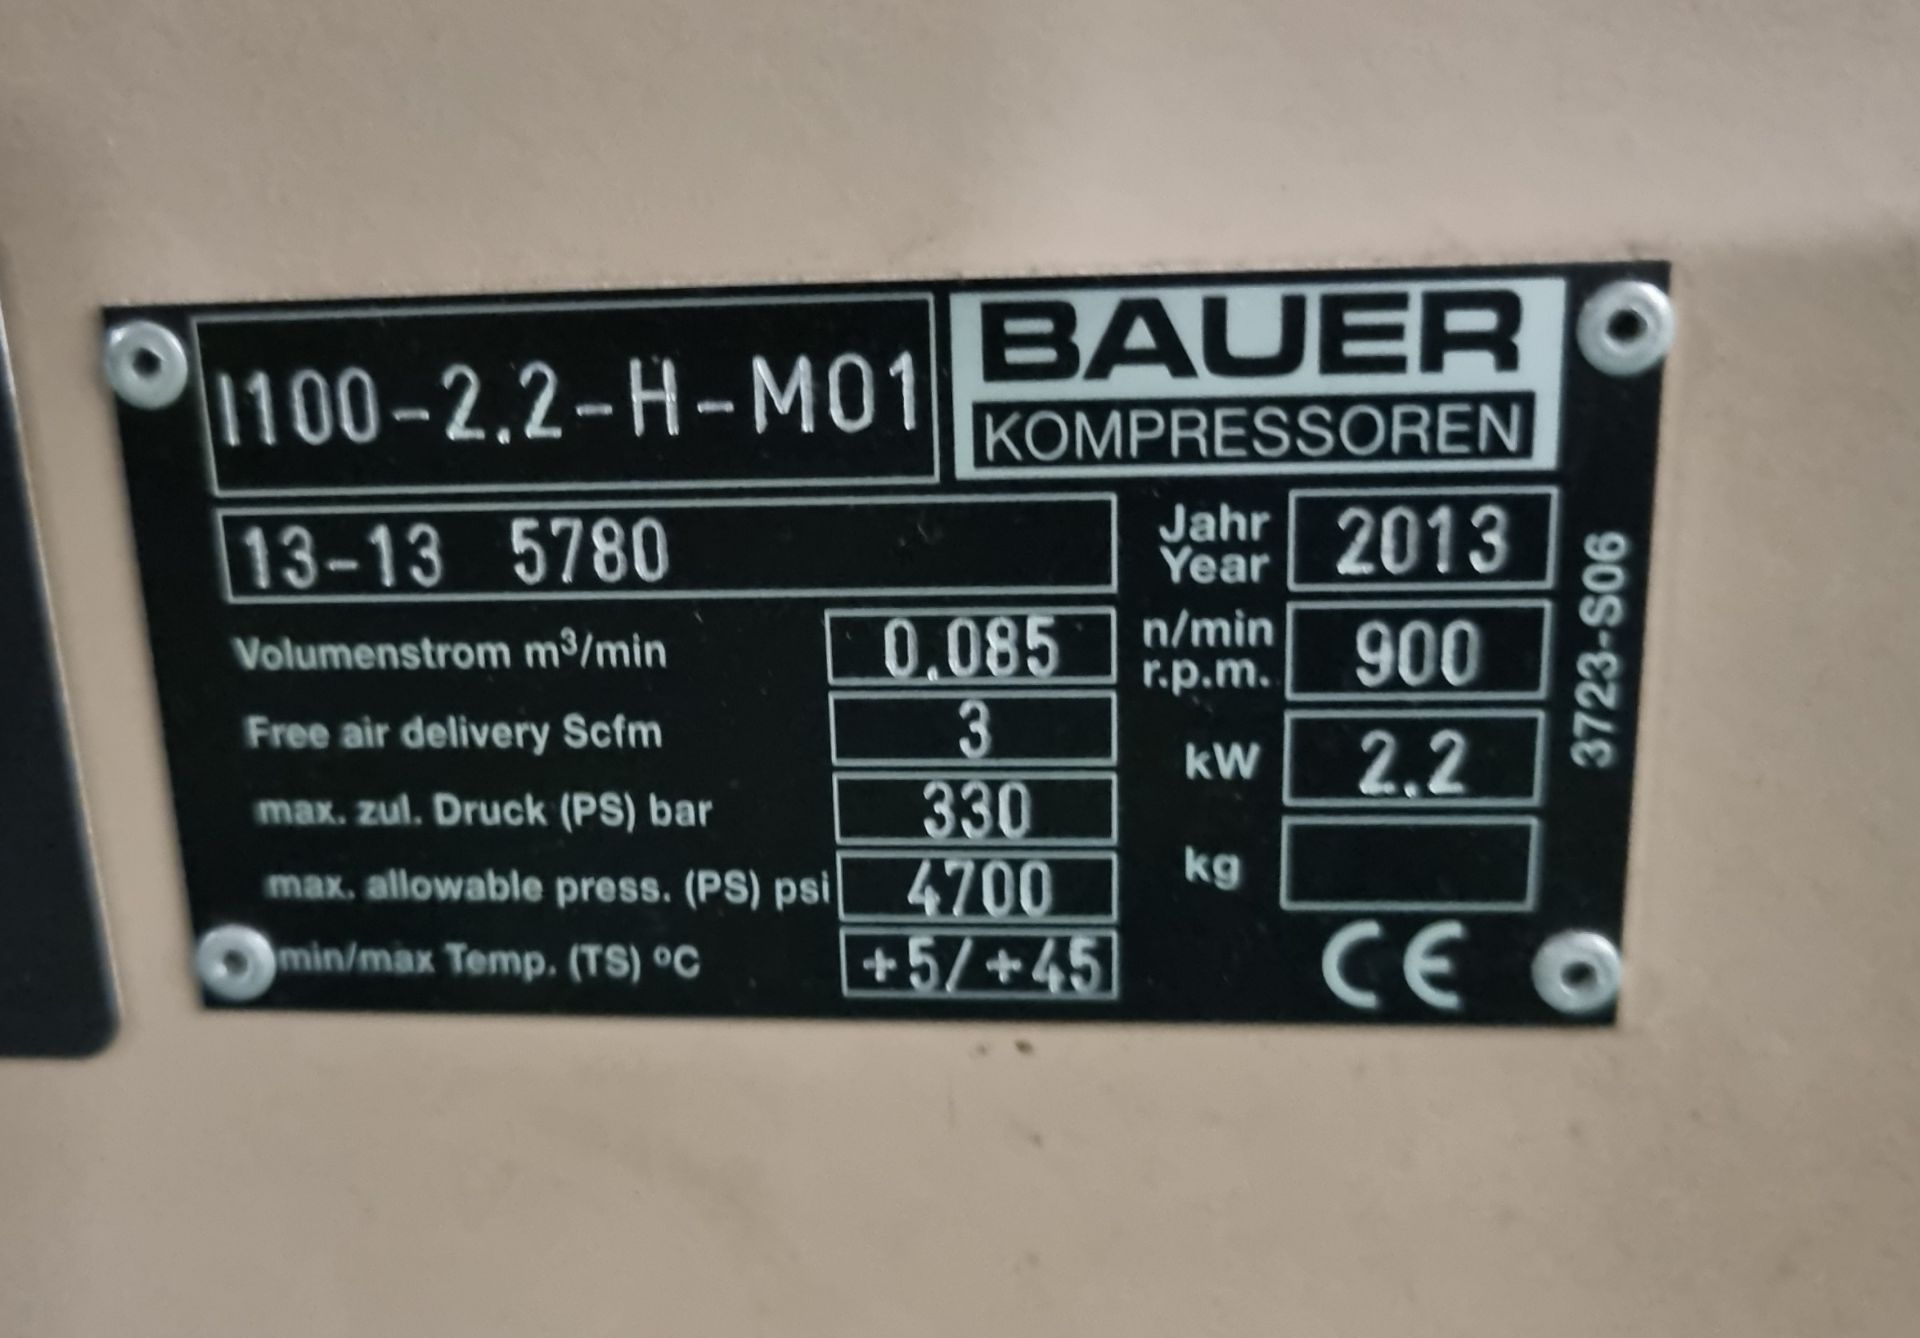 Bauer 100-2.2-H-M01 Compressor & Kompressoren CPF450-M01 cylinder refill system - Image 9 of 21